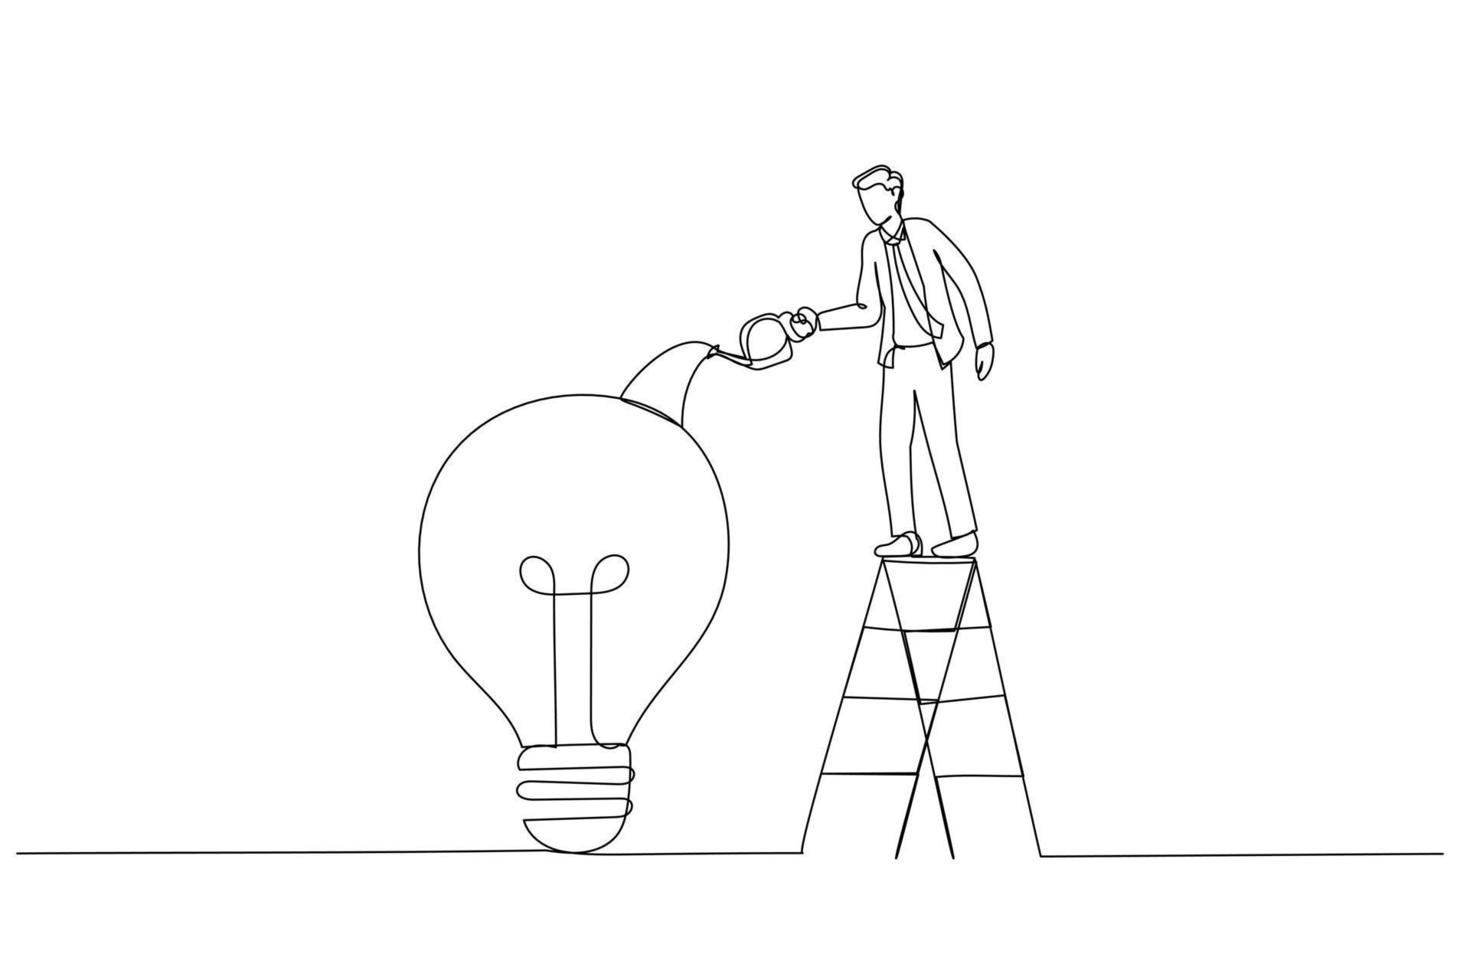 Illustration eines Geschäftsmanns, der Schmiermittel oder Fett in ein mechanisches Getriebe Glühbirnenkonzept der Kreativität fallen lässt. Kunststil mit einer durchgehenden Linie vektor